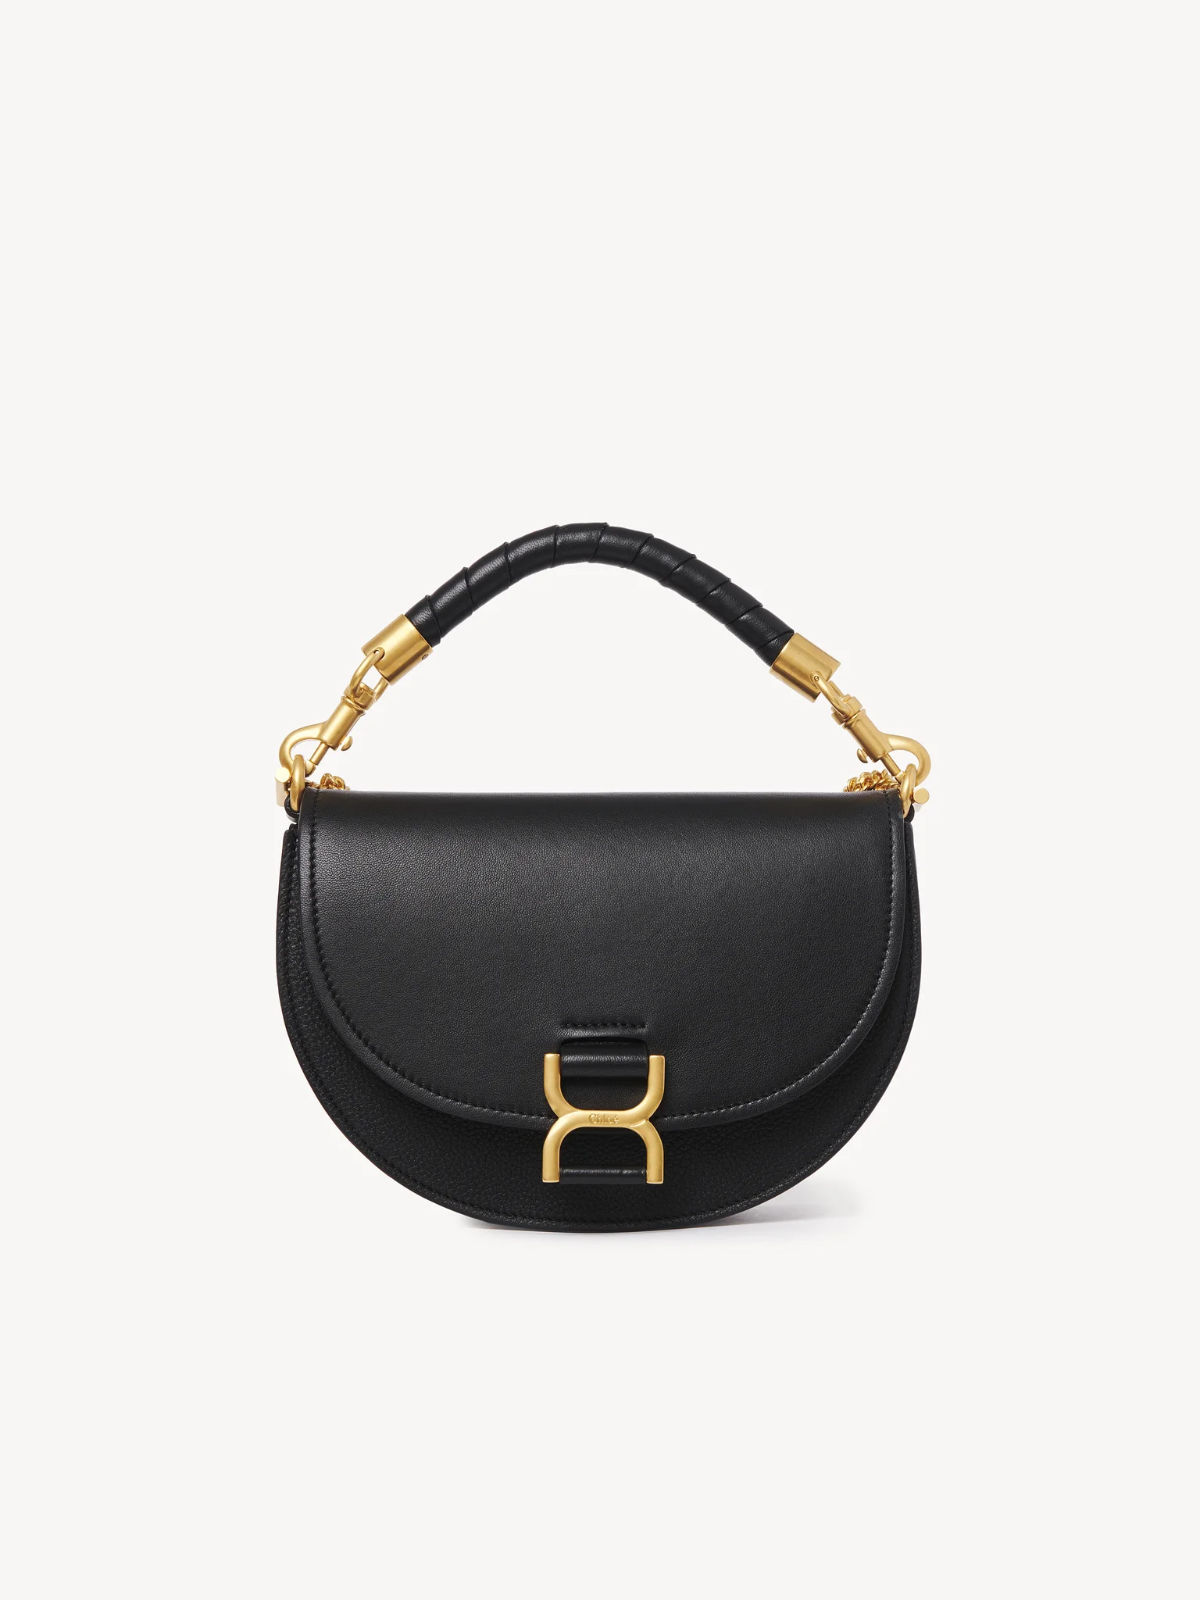 Chloé Black Small Tess Day Bag